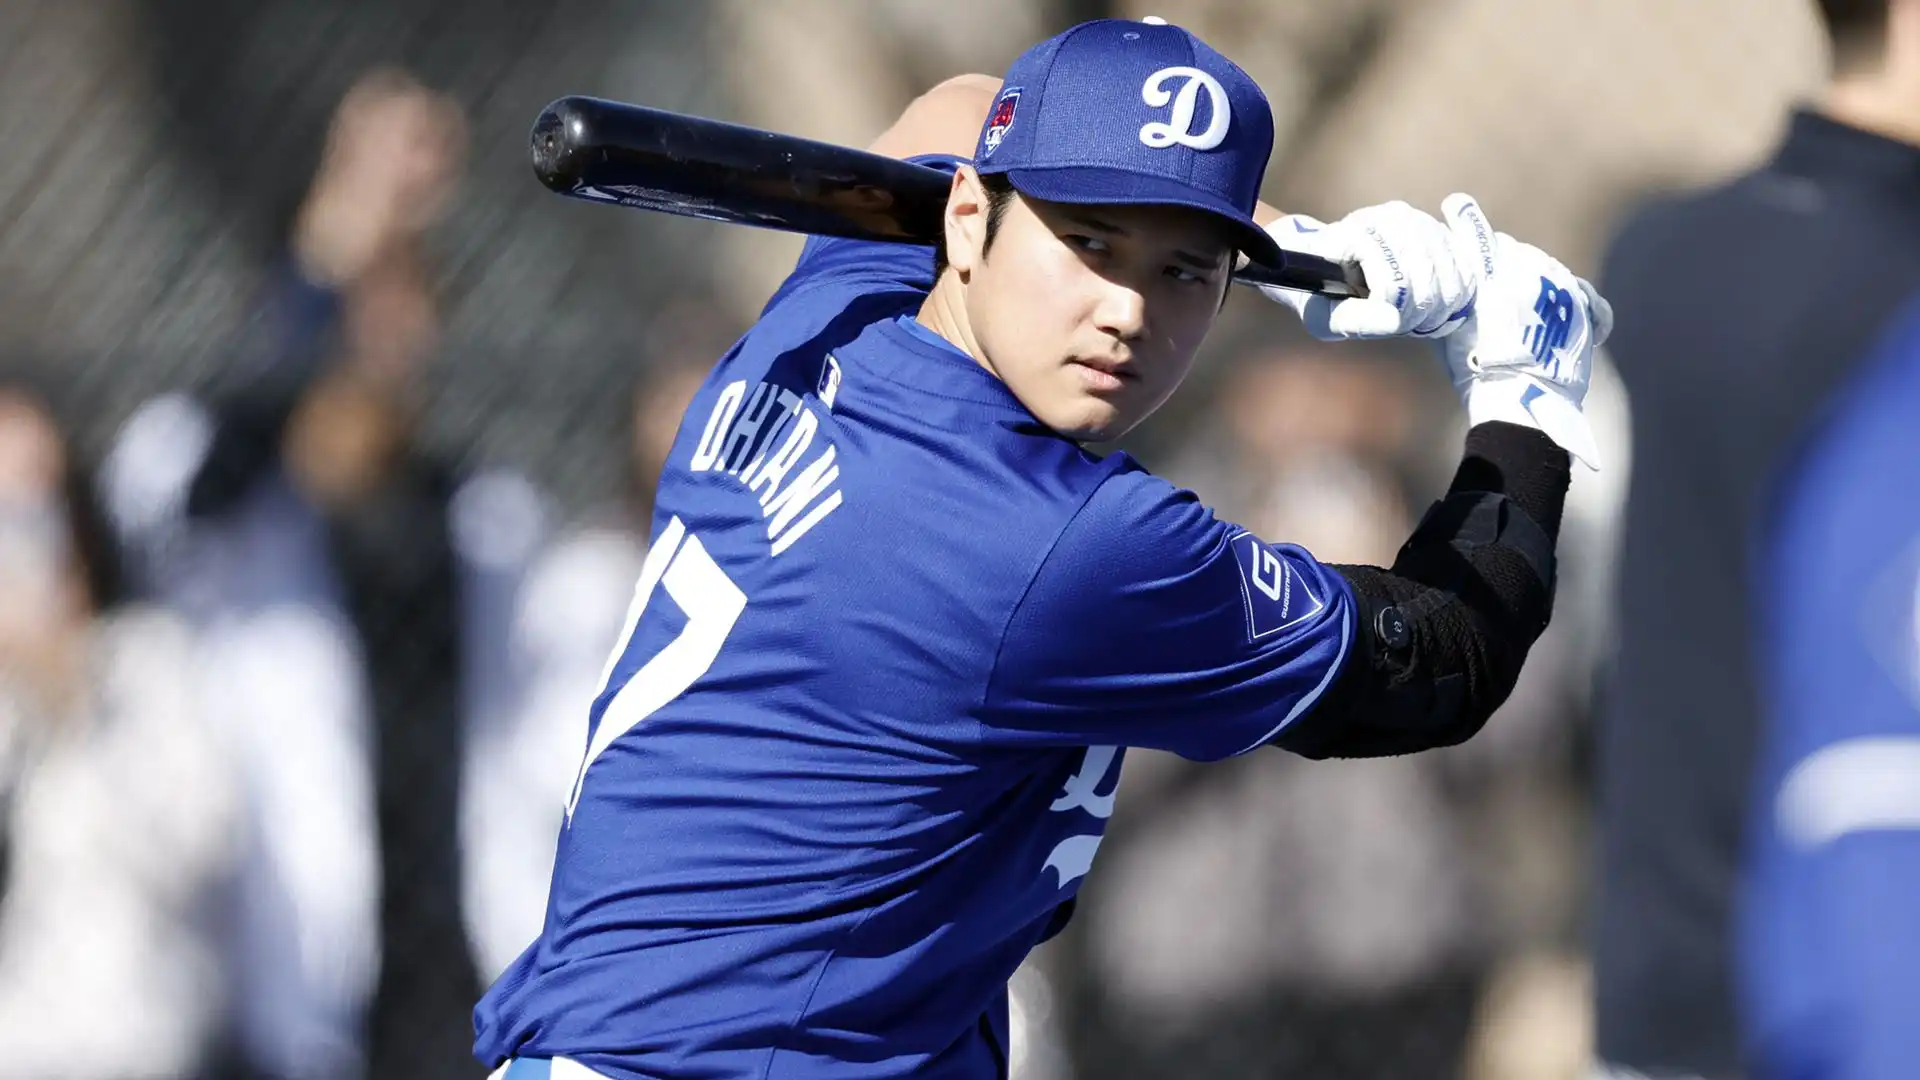 La classifica dei giocatori giapponesi che hanno messo a segno più home run nella Major League Baseball